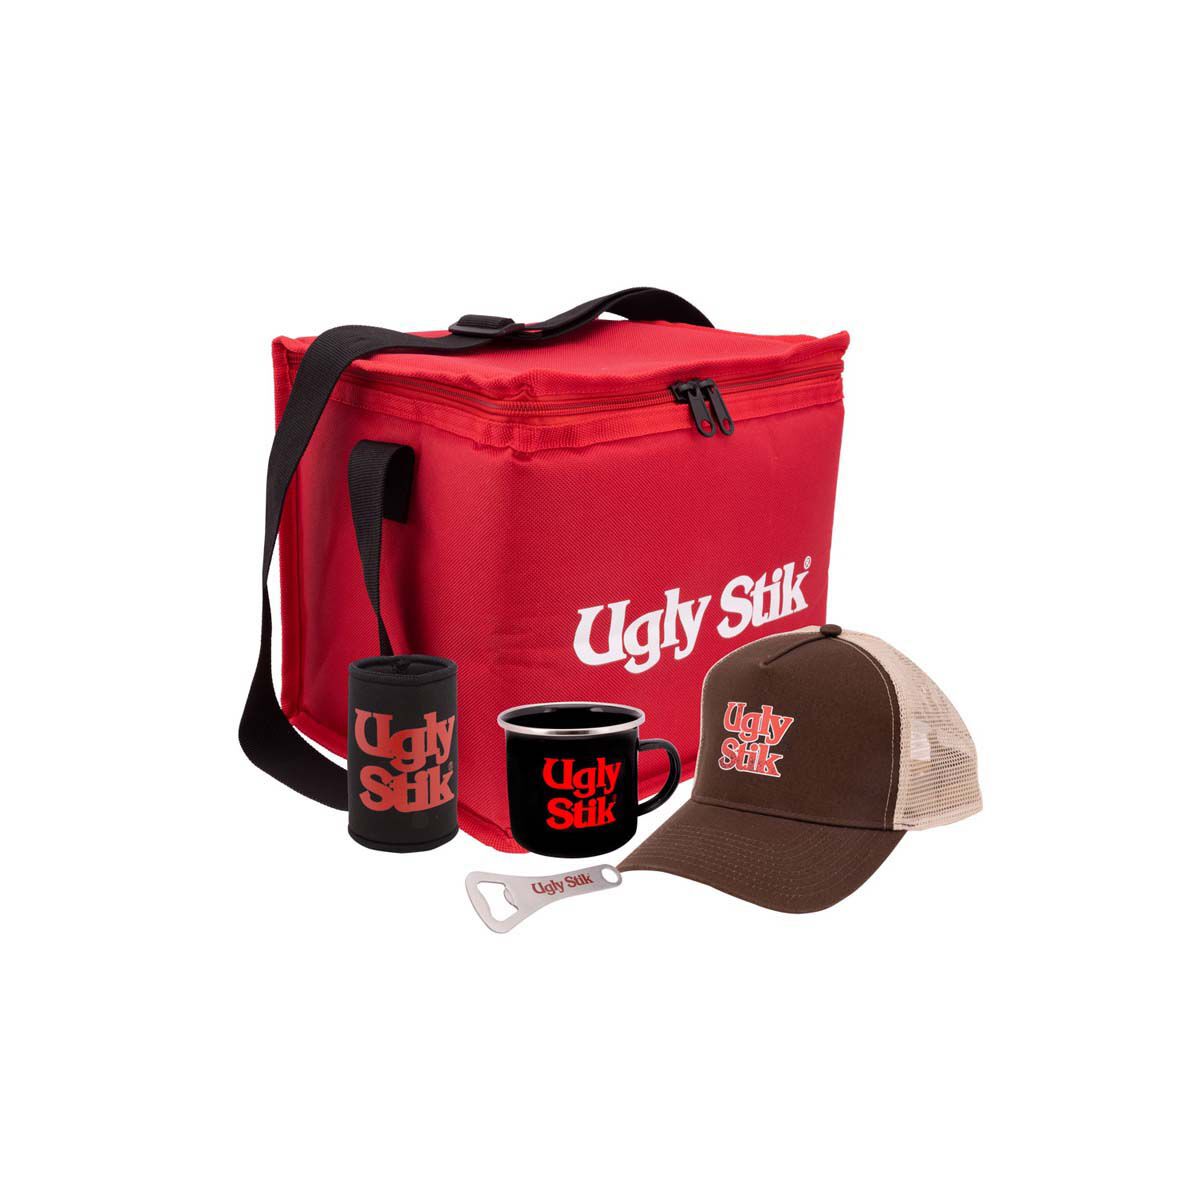 Ugly Stik Cooler Bag Gift Pack